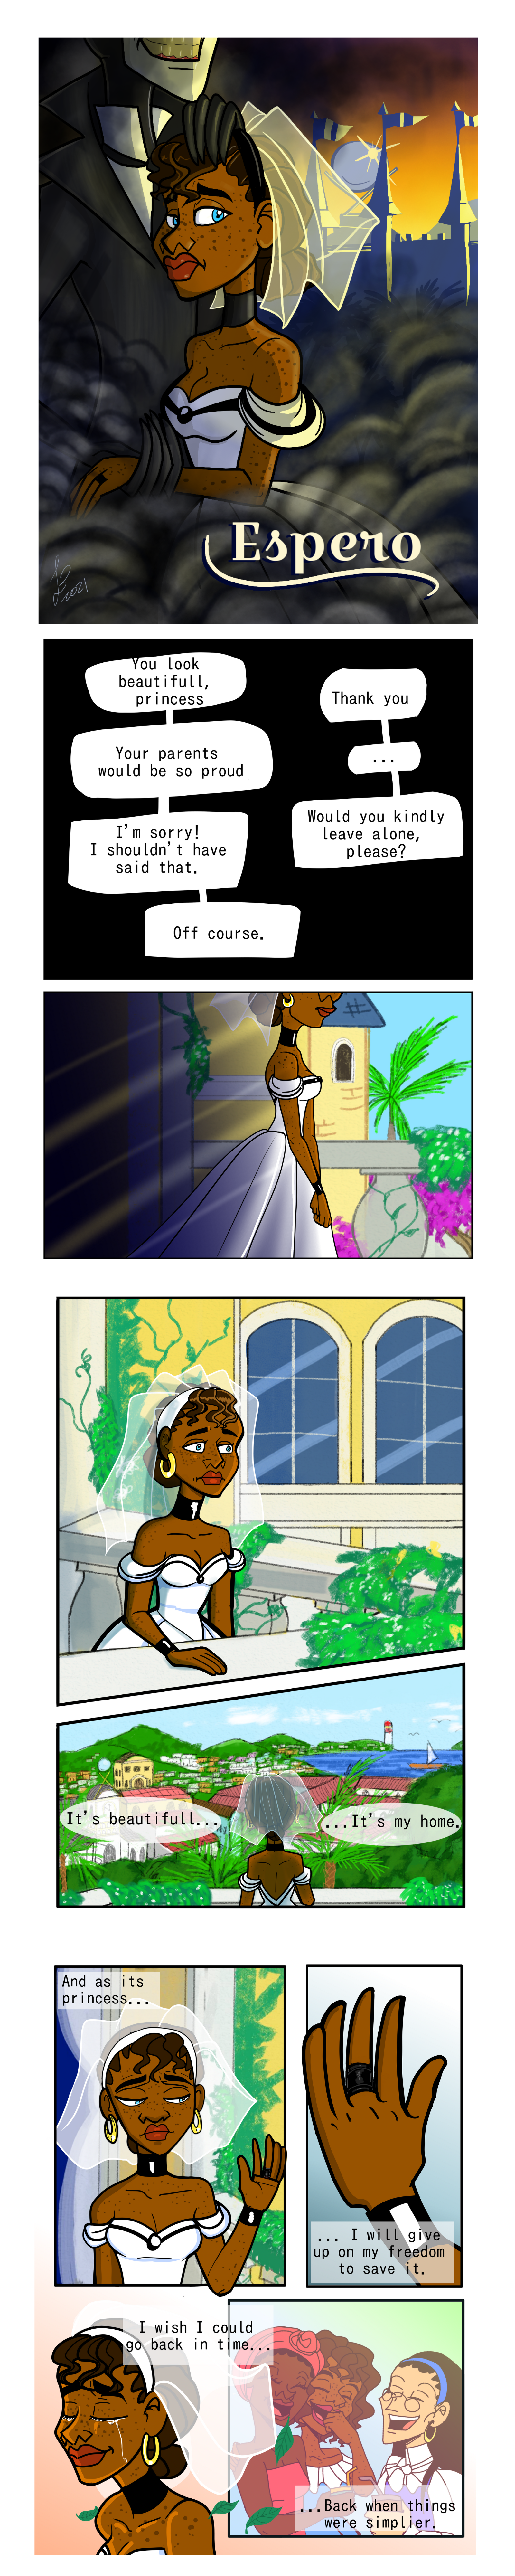 Page 1: A sad bride